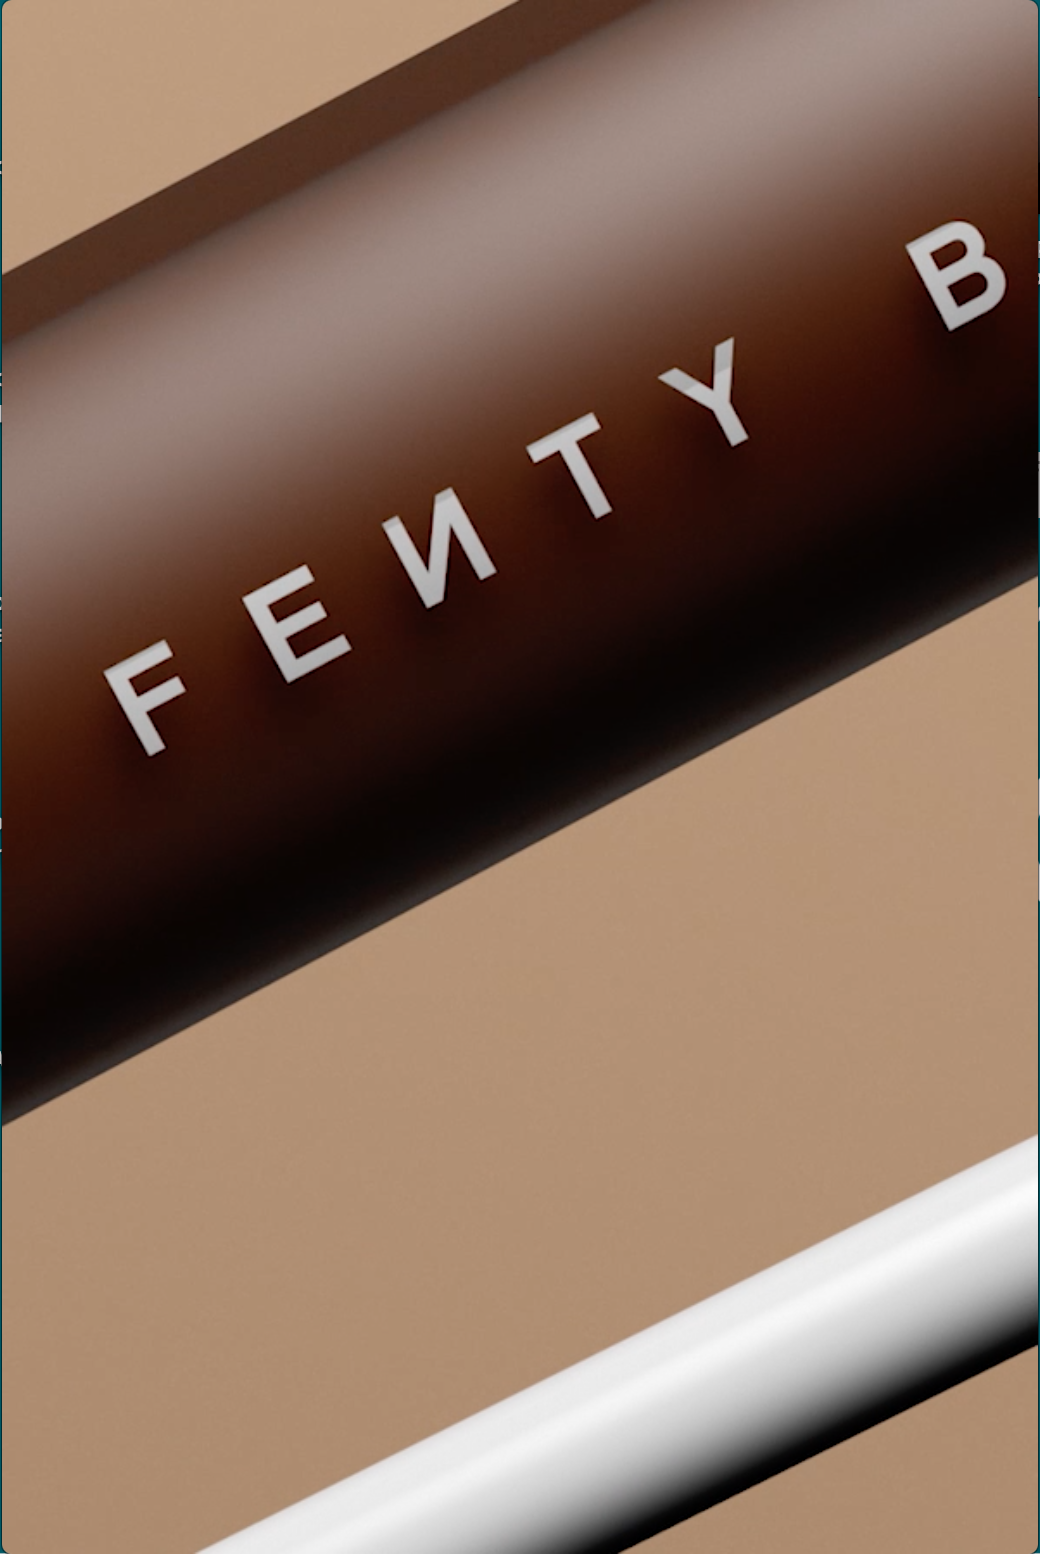 Fenty Concealer '19 V1 Video - Fenty Concealer '19 V1 Video -   24 fenty beauty Videos ideas